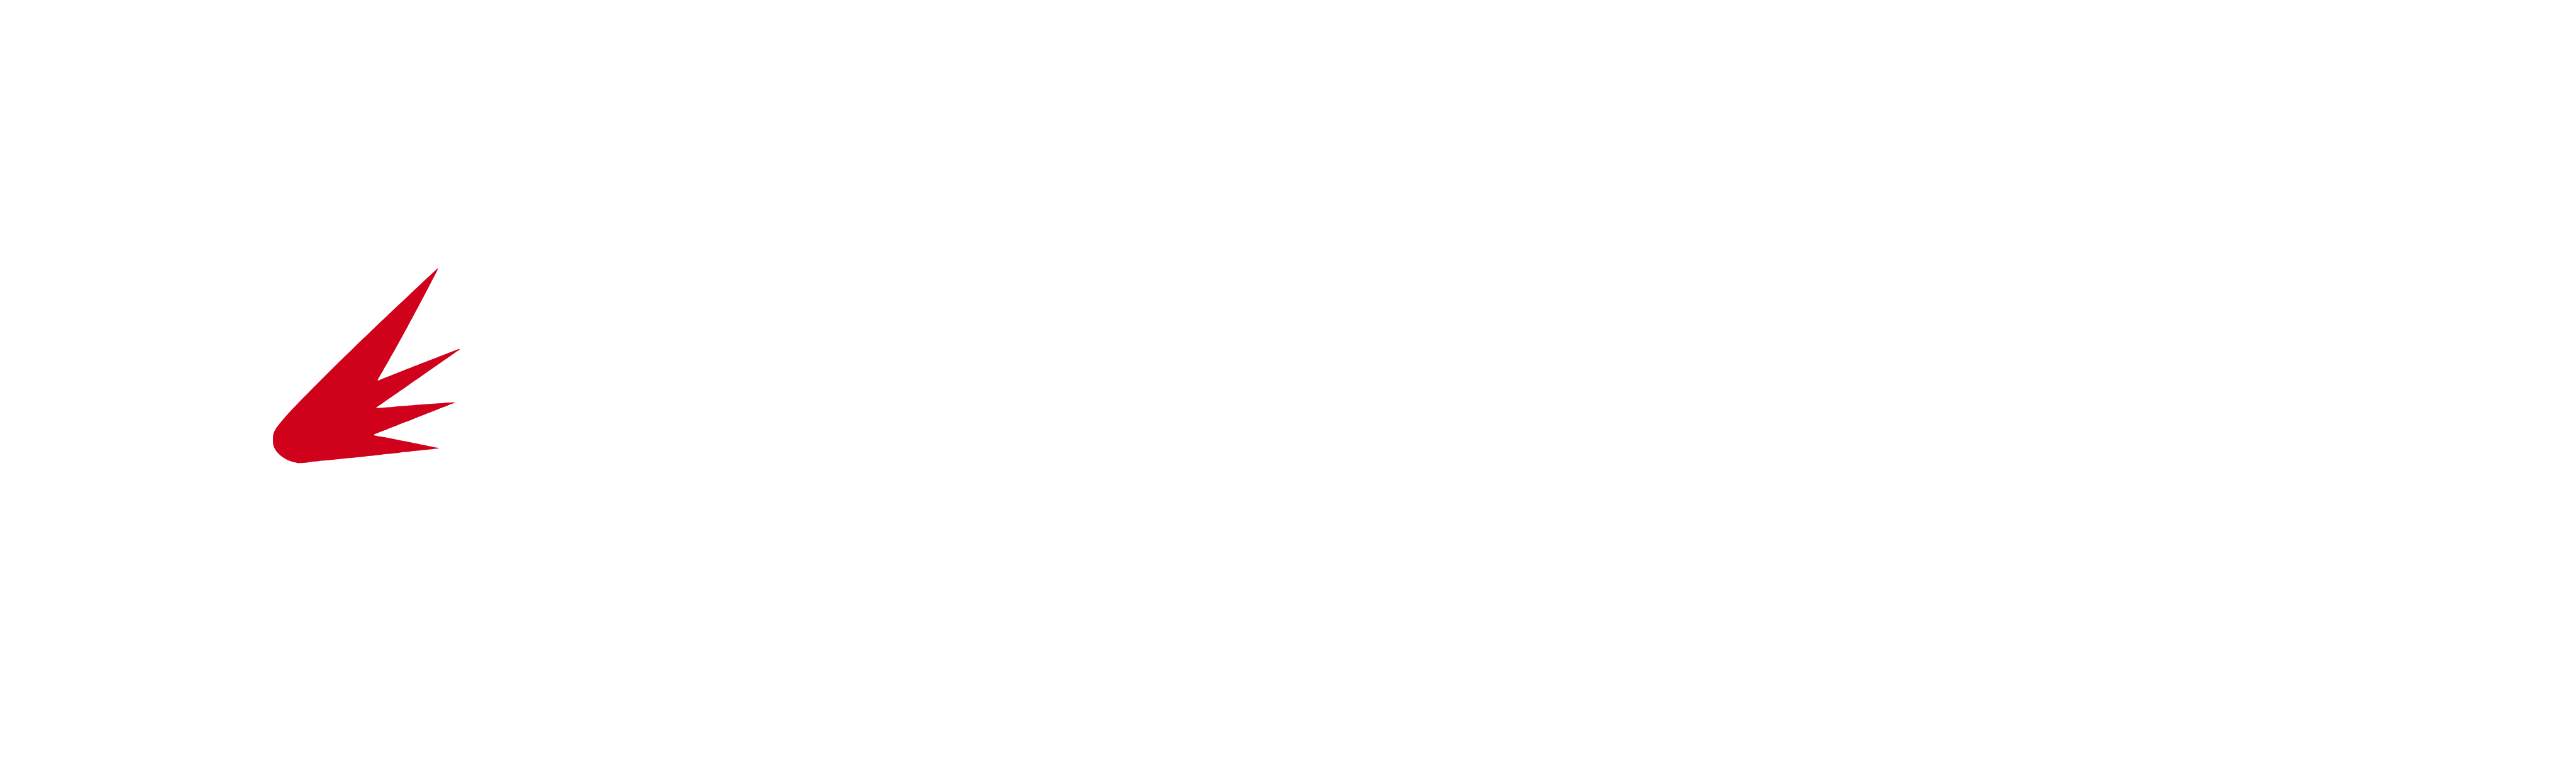 Net Core Genesis Web Site